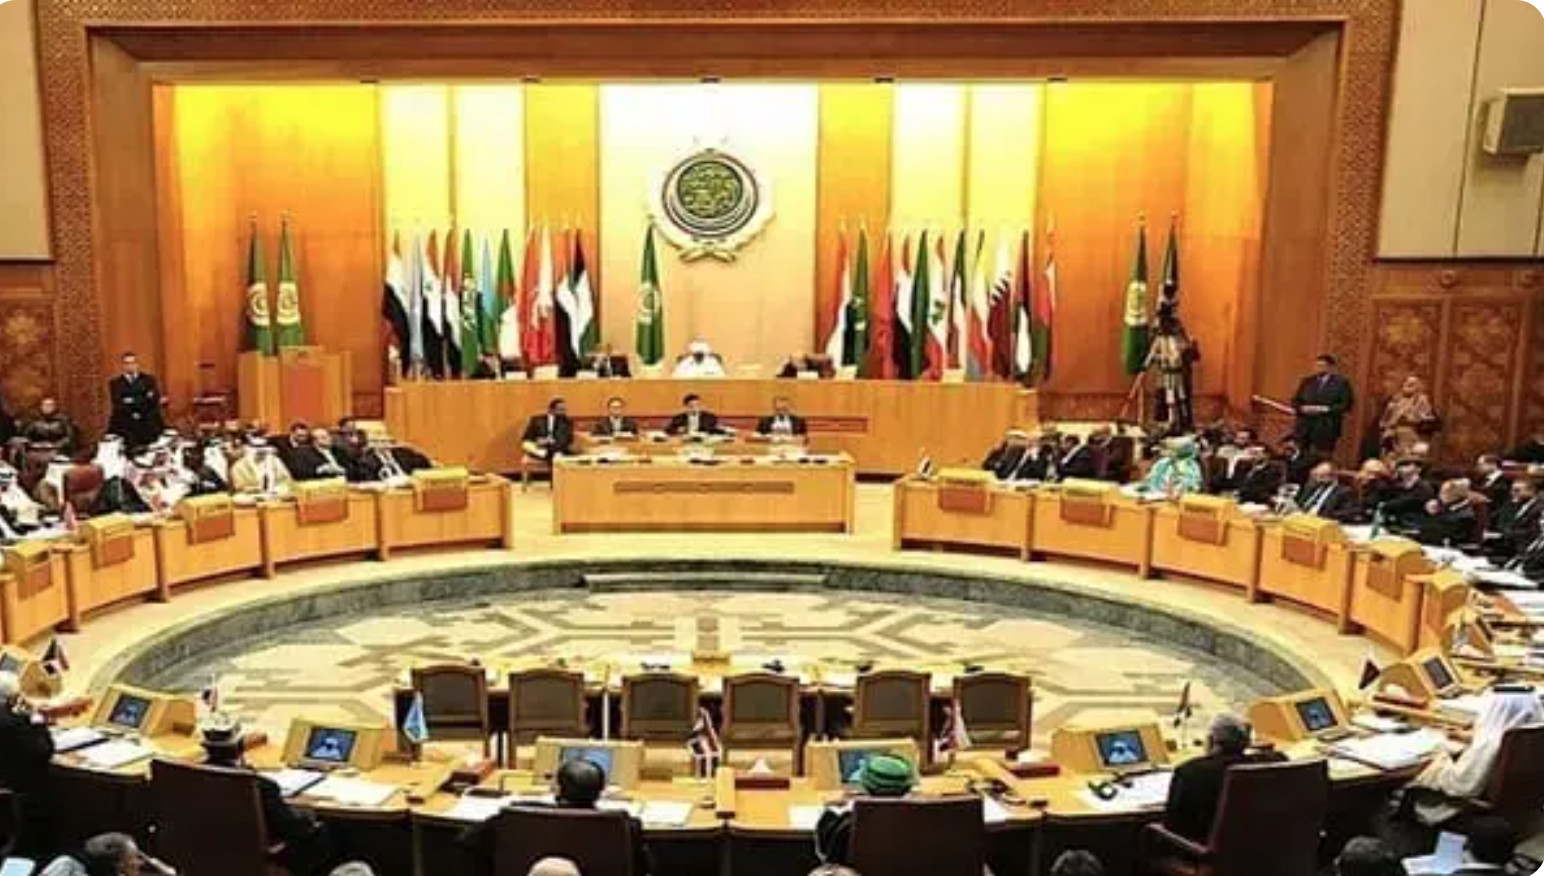 La ligue arabe salue la préparation par la Mauritanie du prochain sommet économique